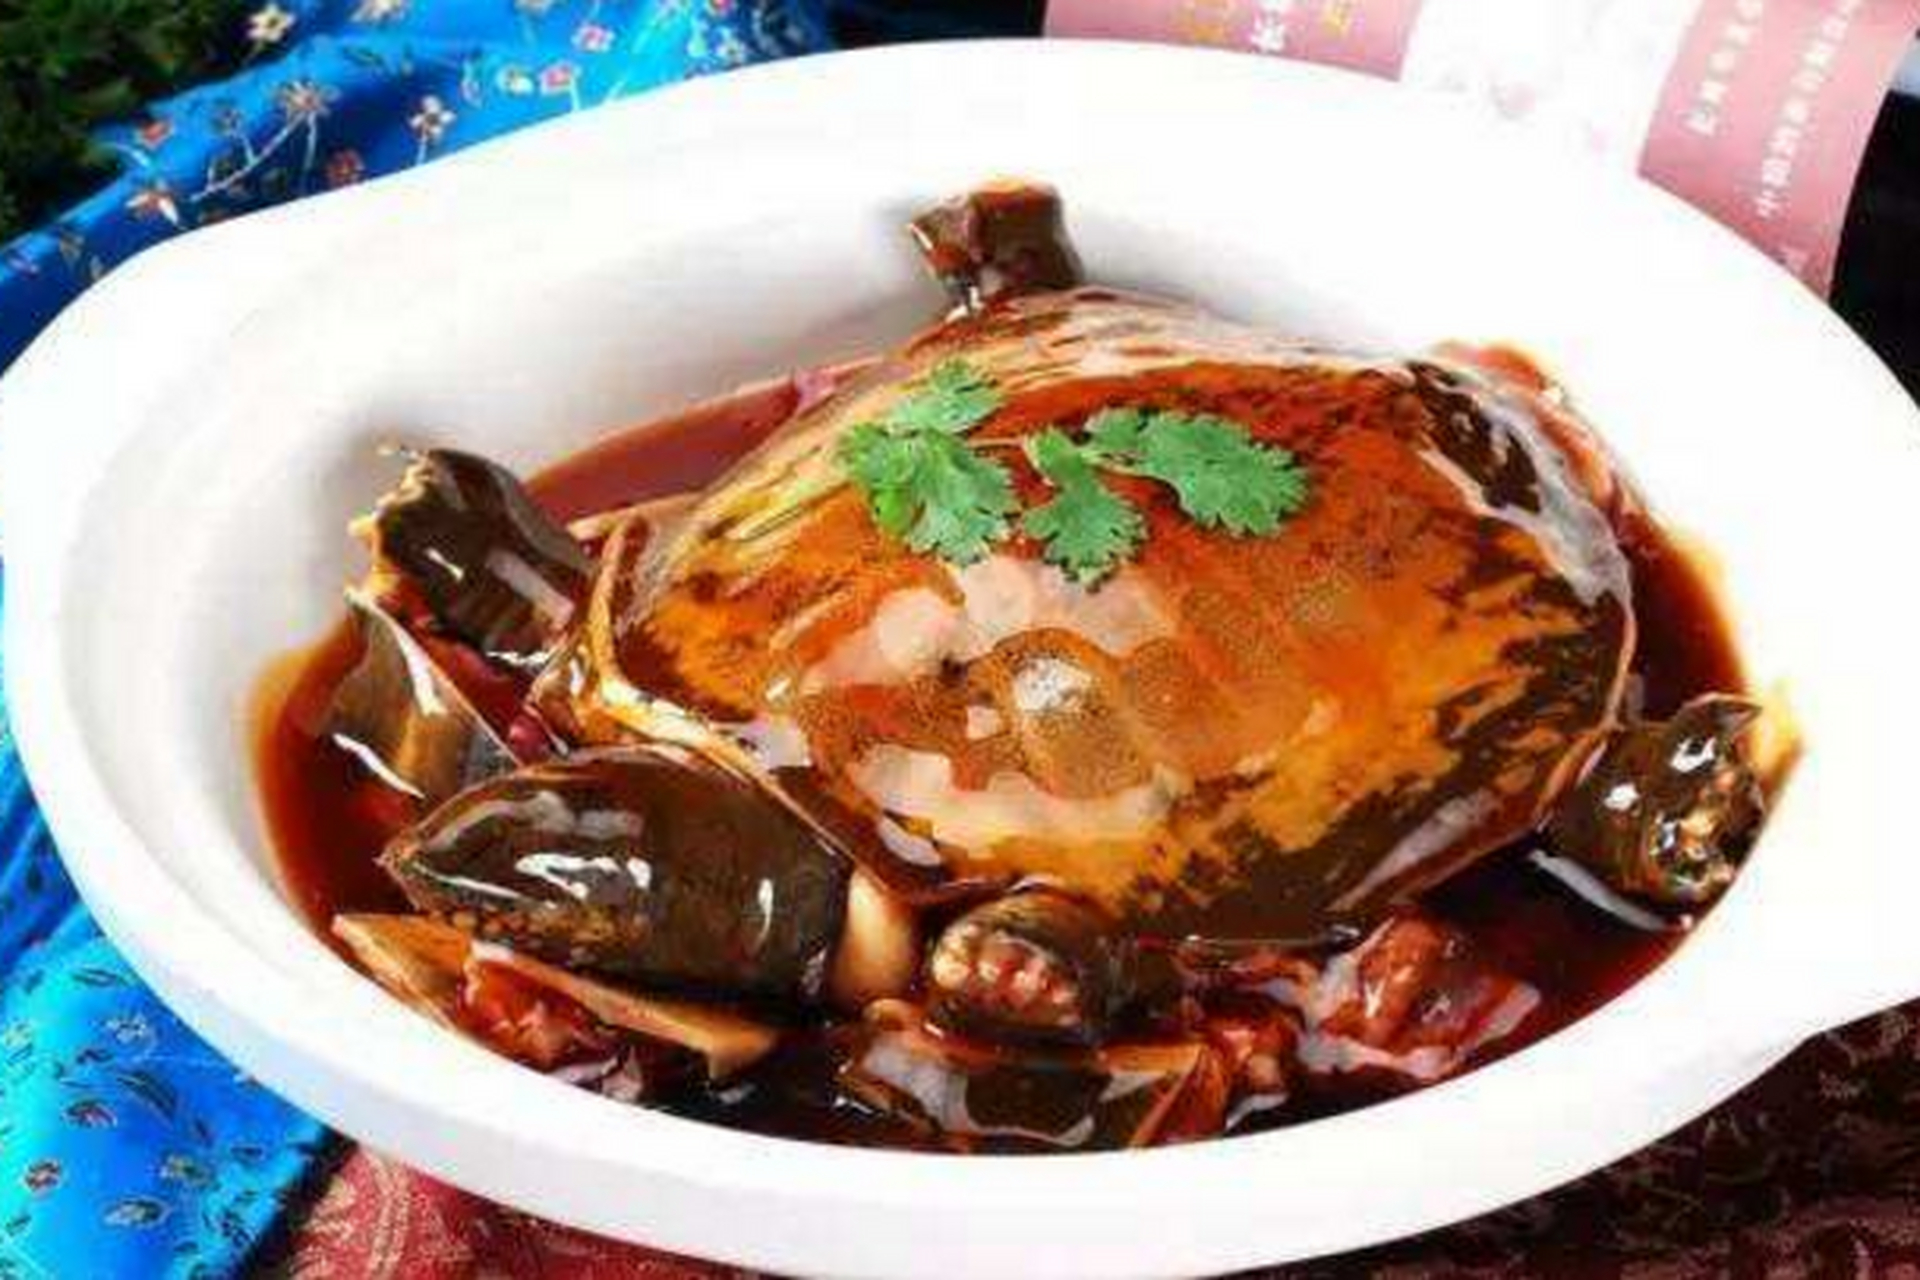 除此之外,宁波的美食文化也是觉得不能错过的